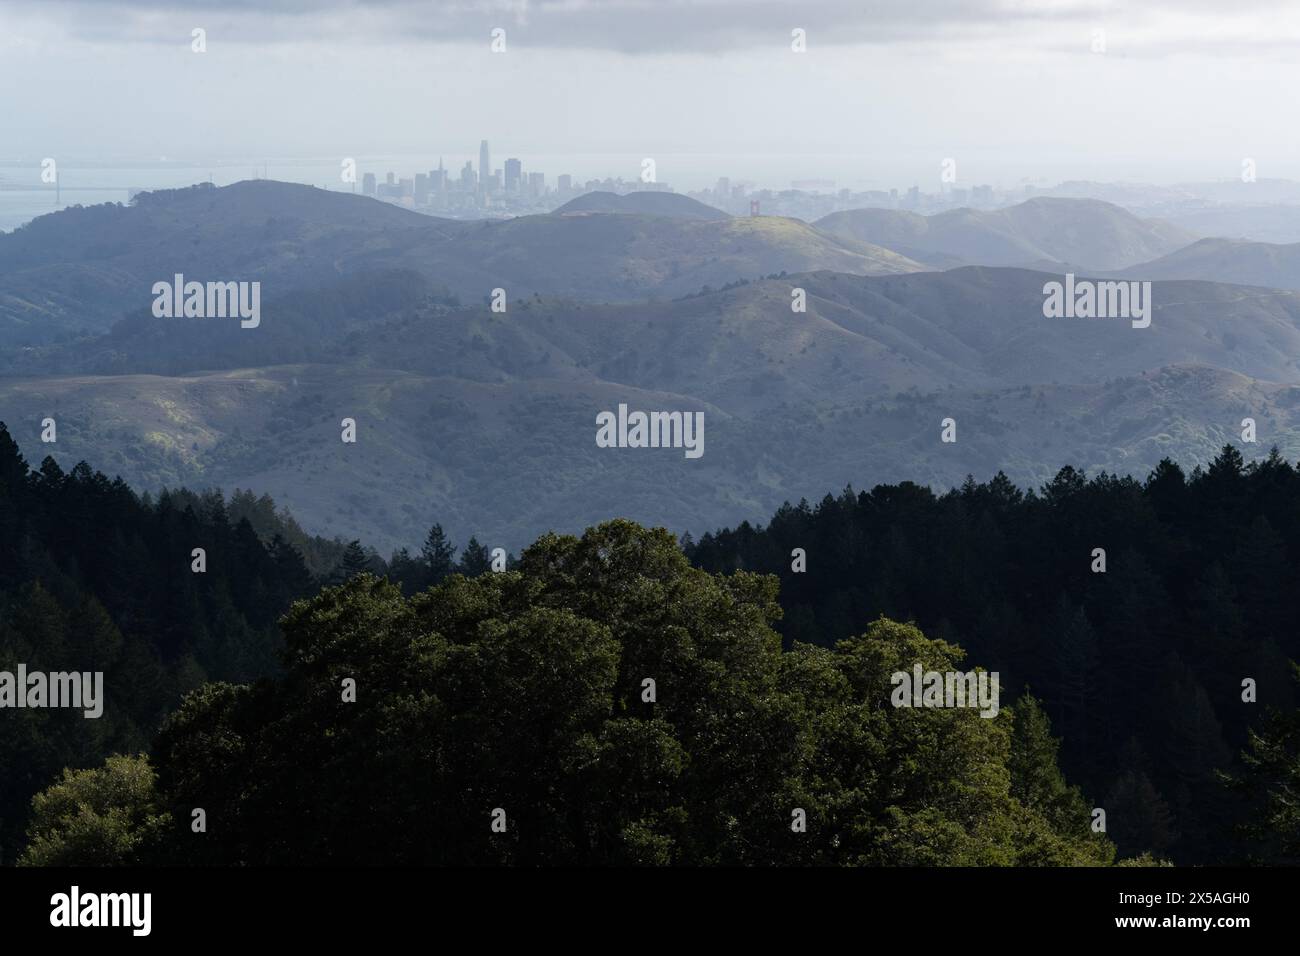 Fernsicht auf die Skyline von San Francisco, durch Nebel und Dunst von einem grünen, im Frühling gelegenen Berg in den Marin Headlands im Norden von Cali Stockfoto